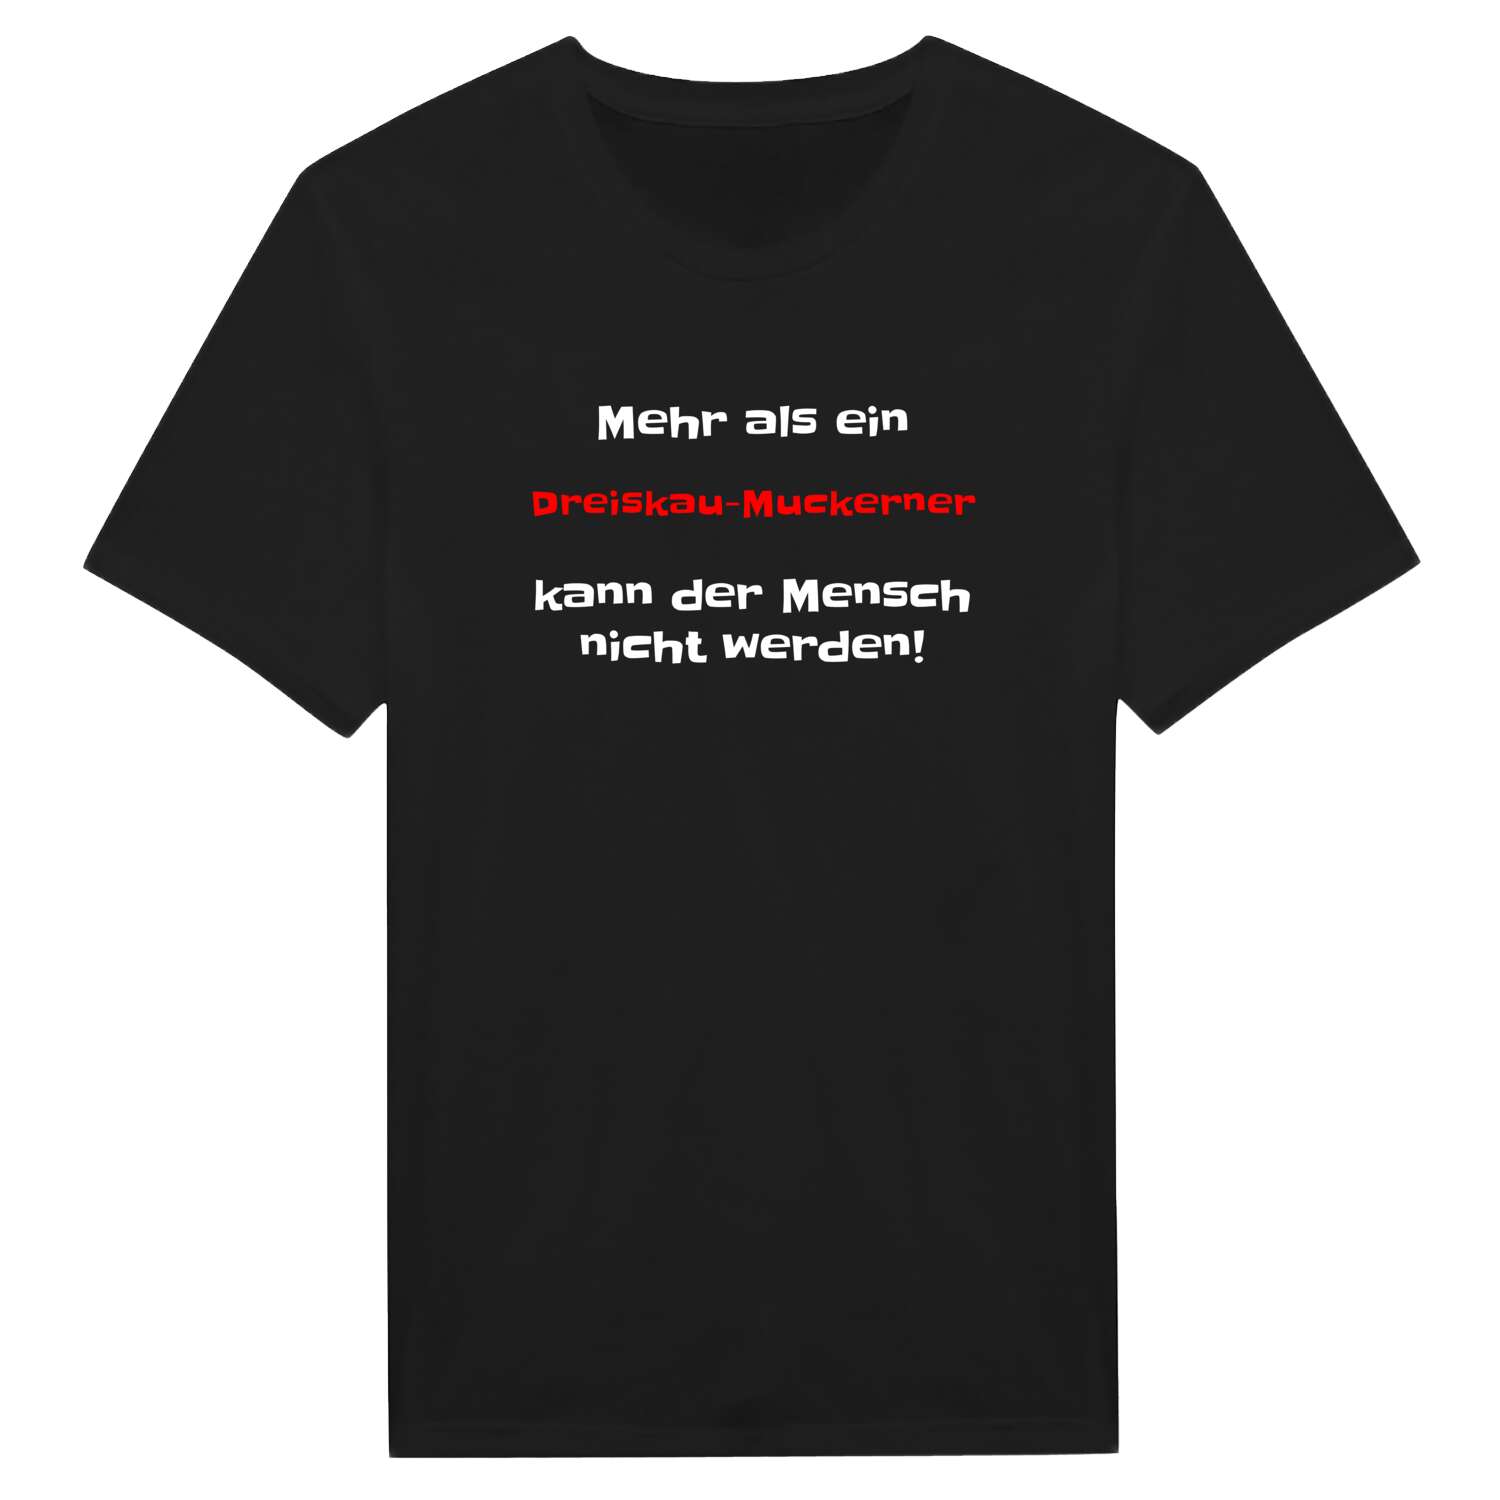 Dreiskau-Muckern T-Shirt »Mehr als ein«